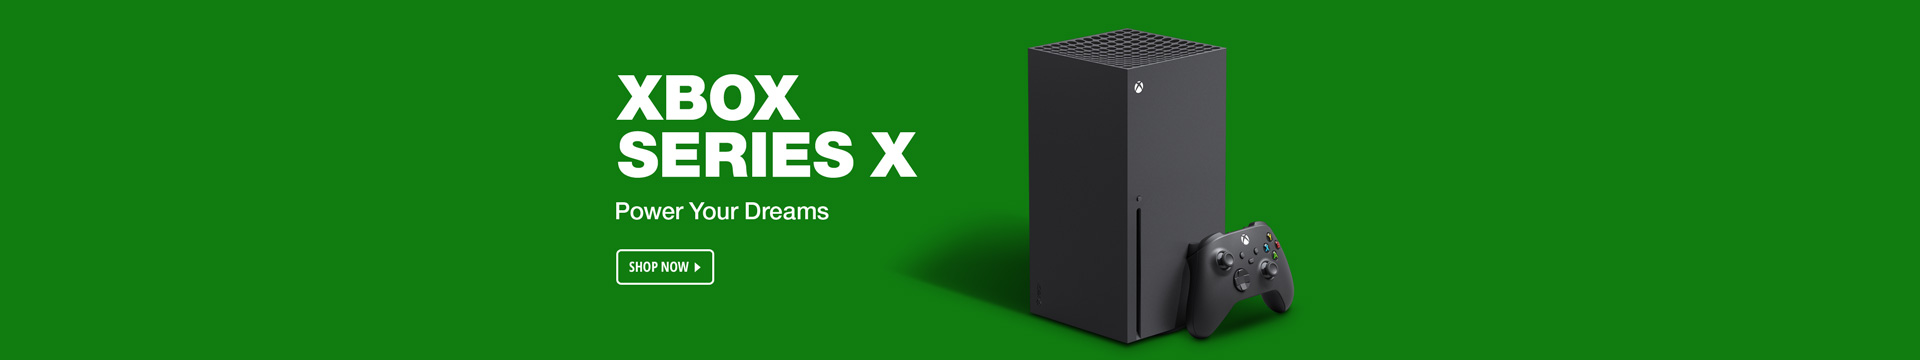 xbox series x toslink